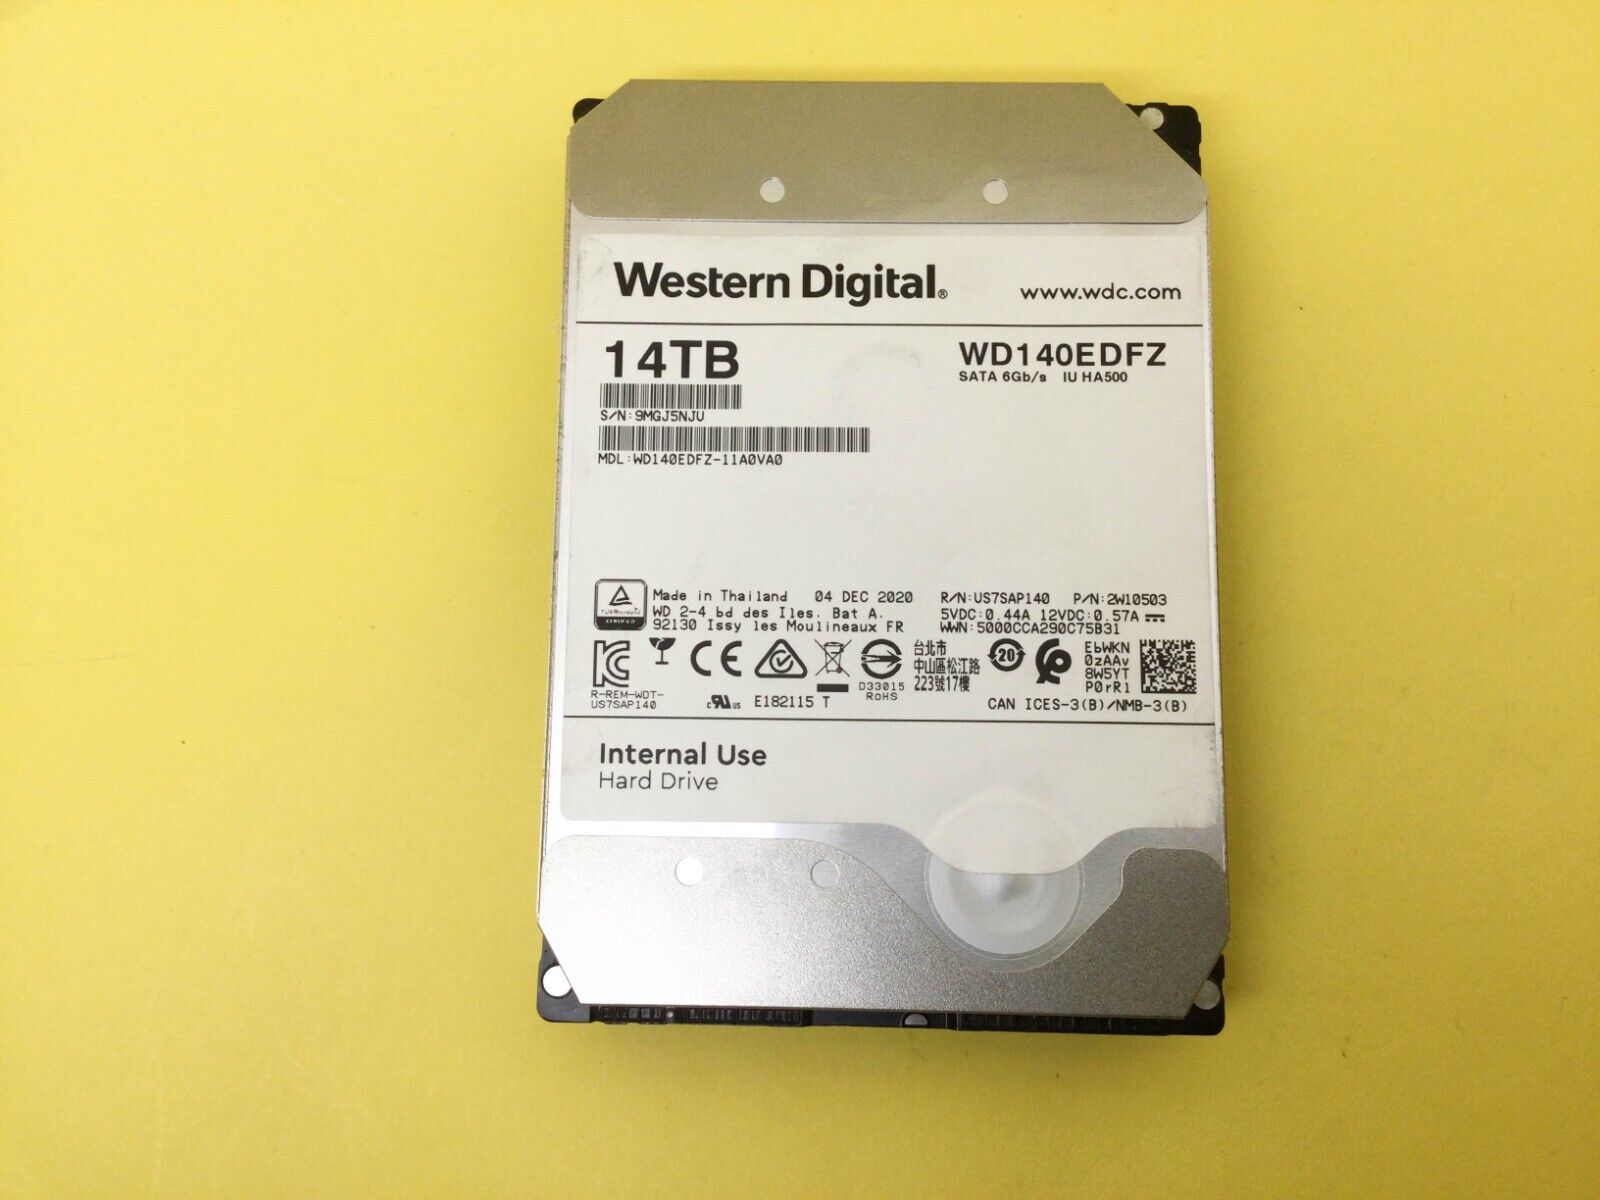 Western Digital 14TB 5400 RPM SATA 6Gb/s 3.5'' HDD WD140EDFZ